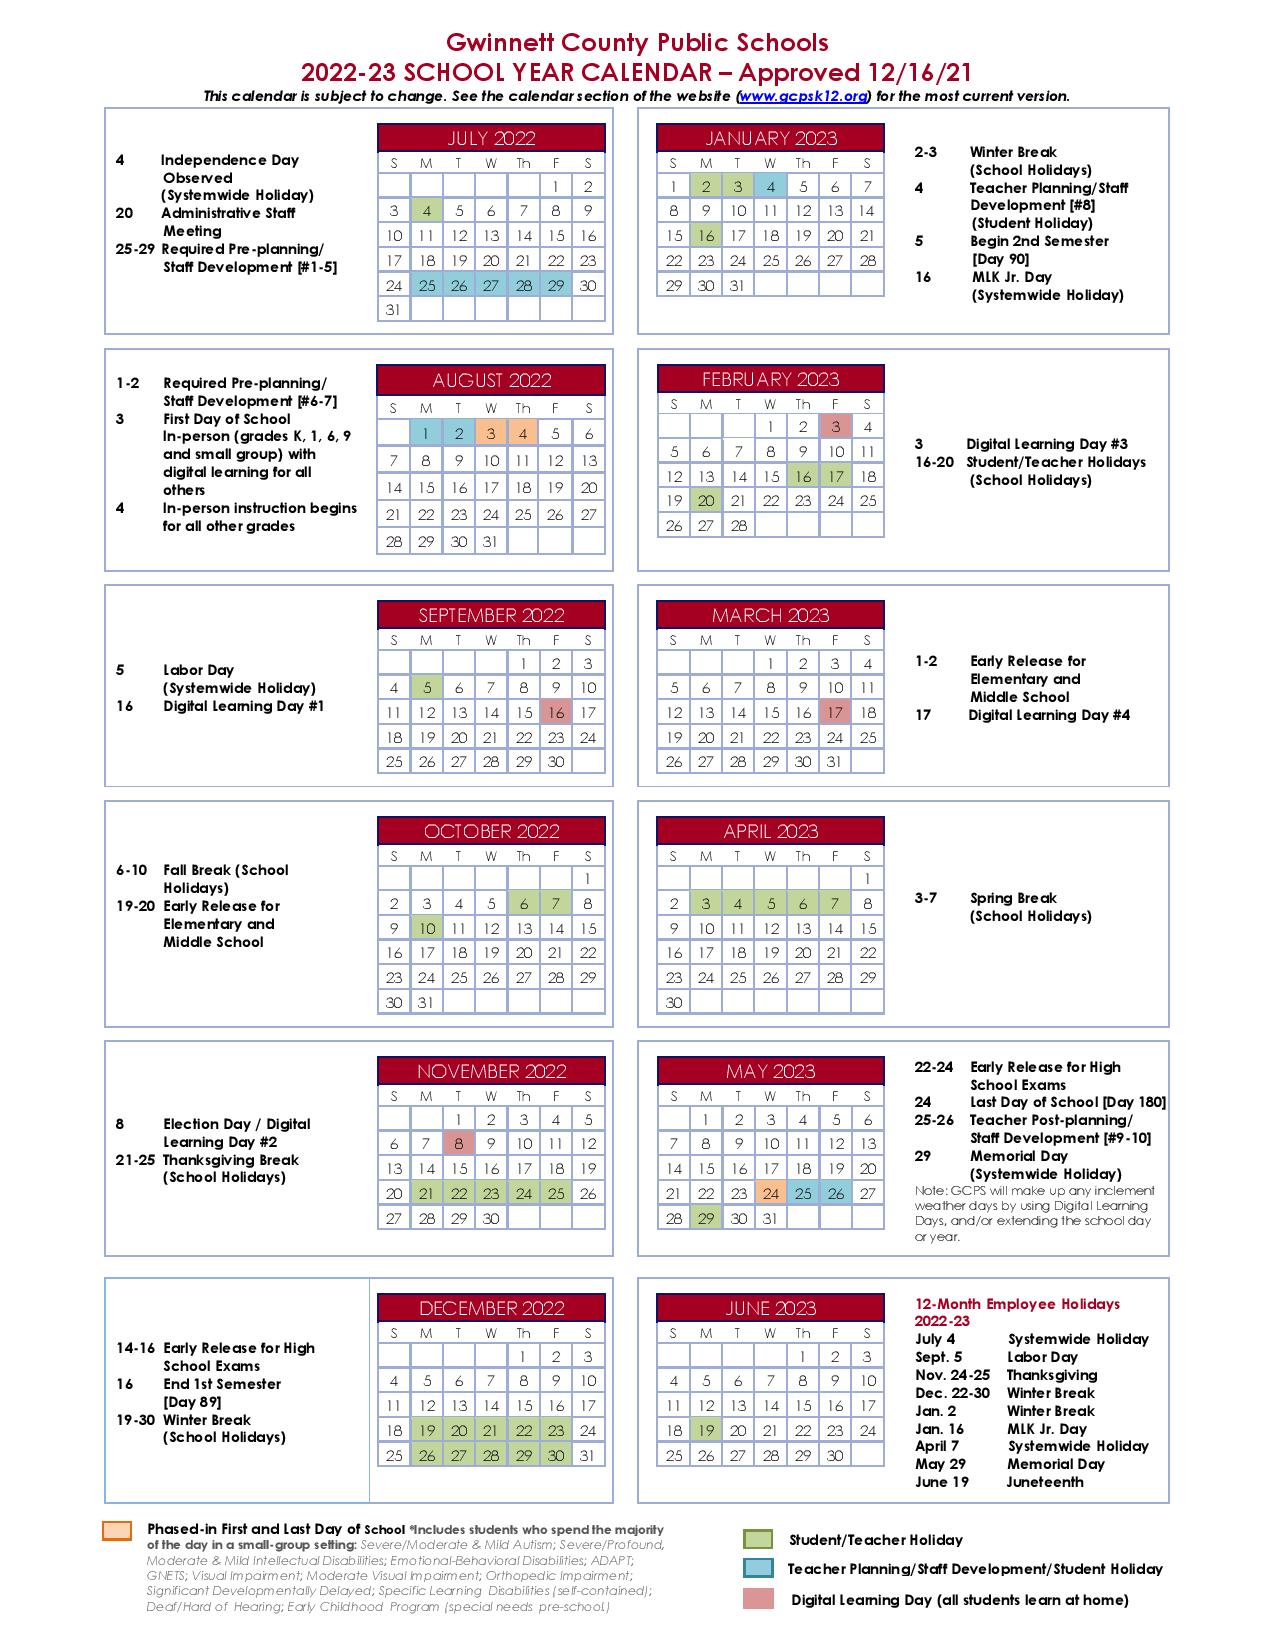 Gwinnett County Public Schools Calendar Holidays 2022-2023